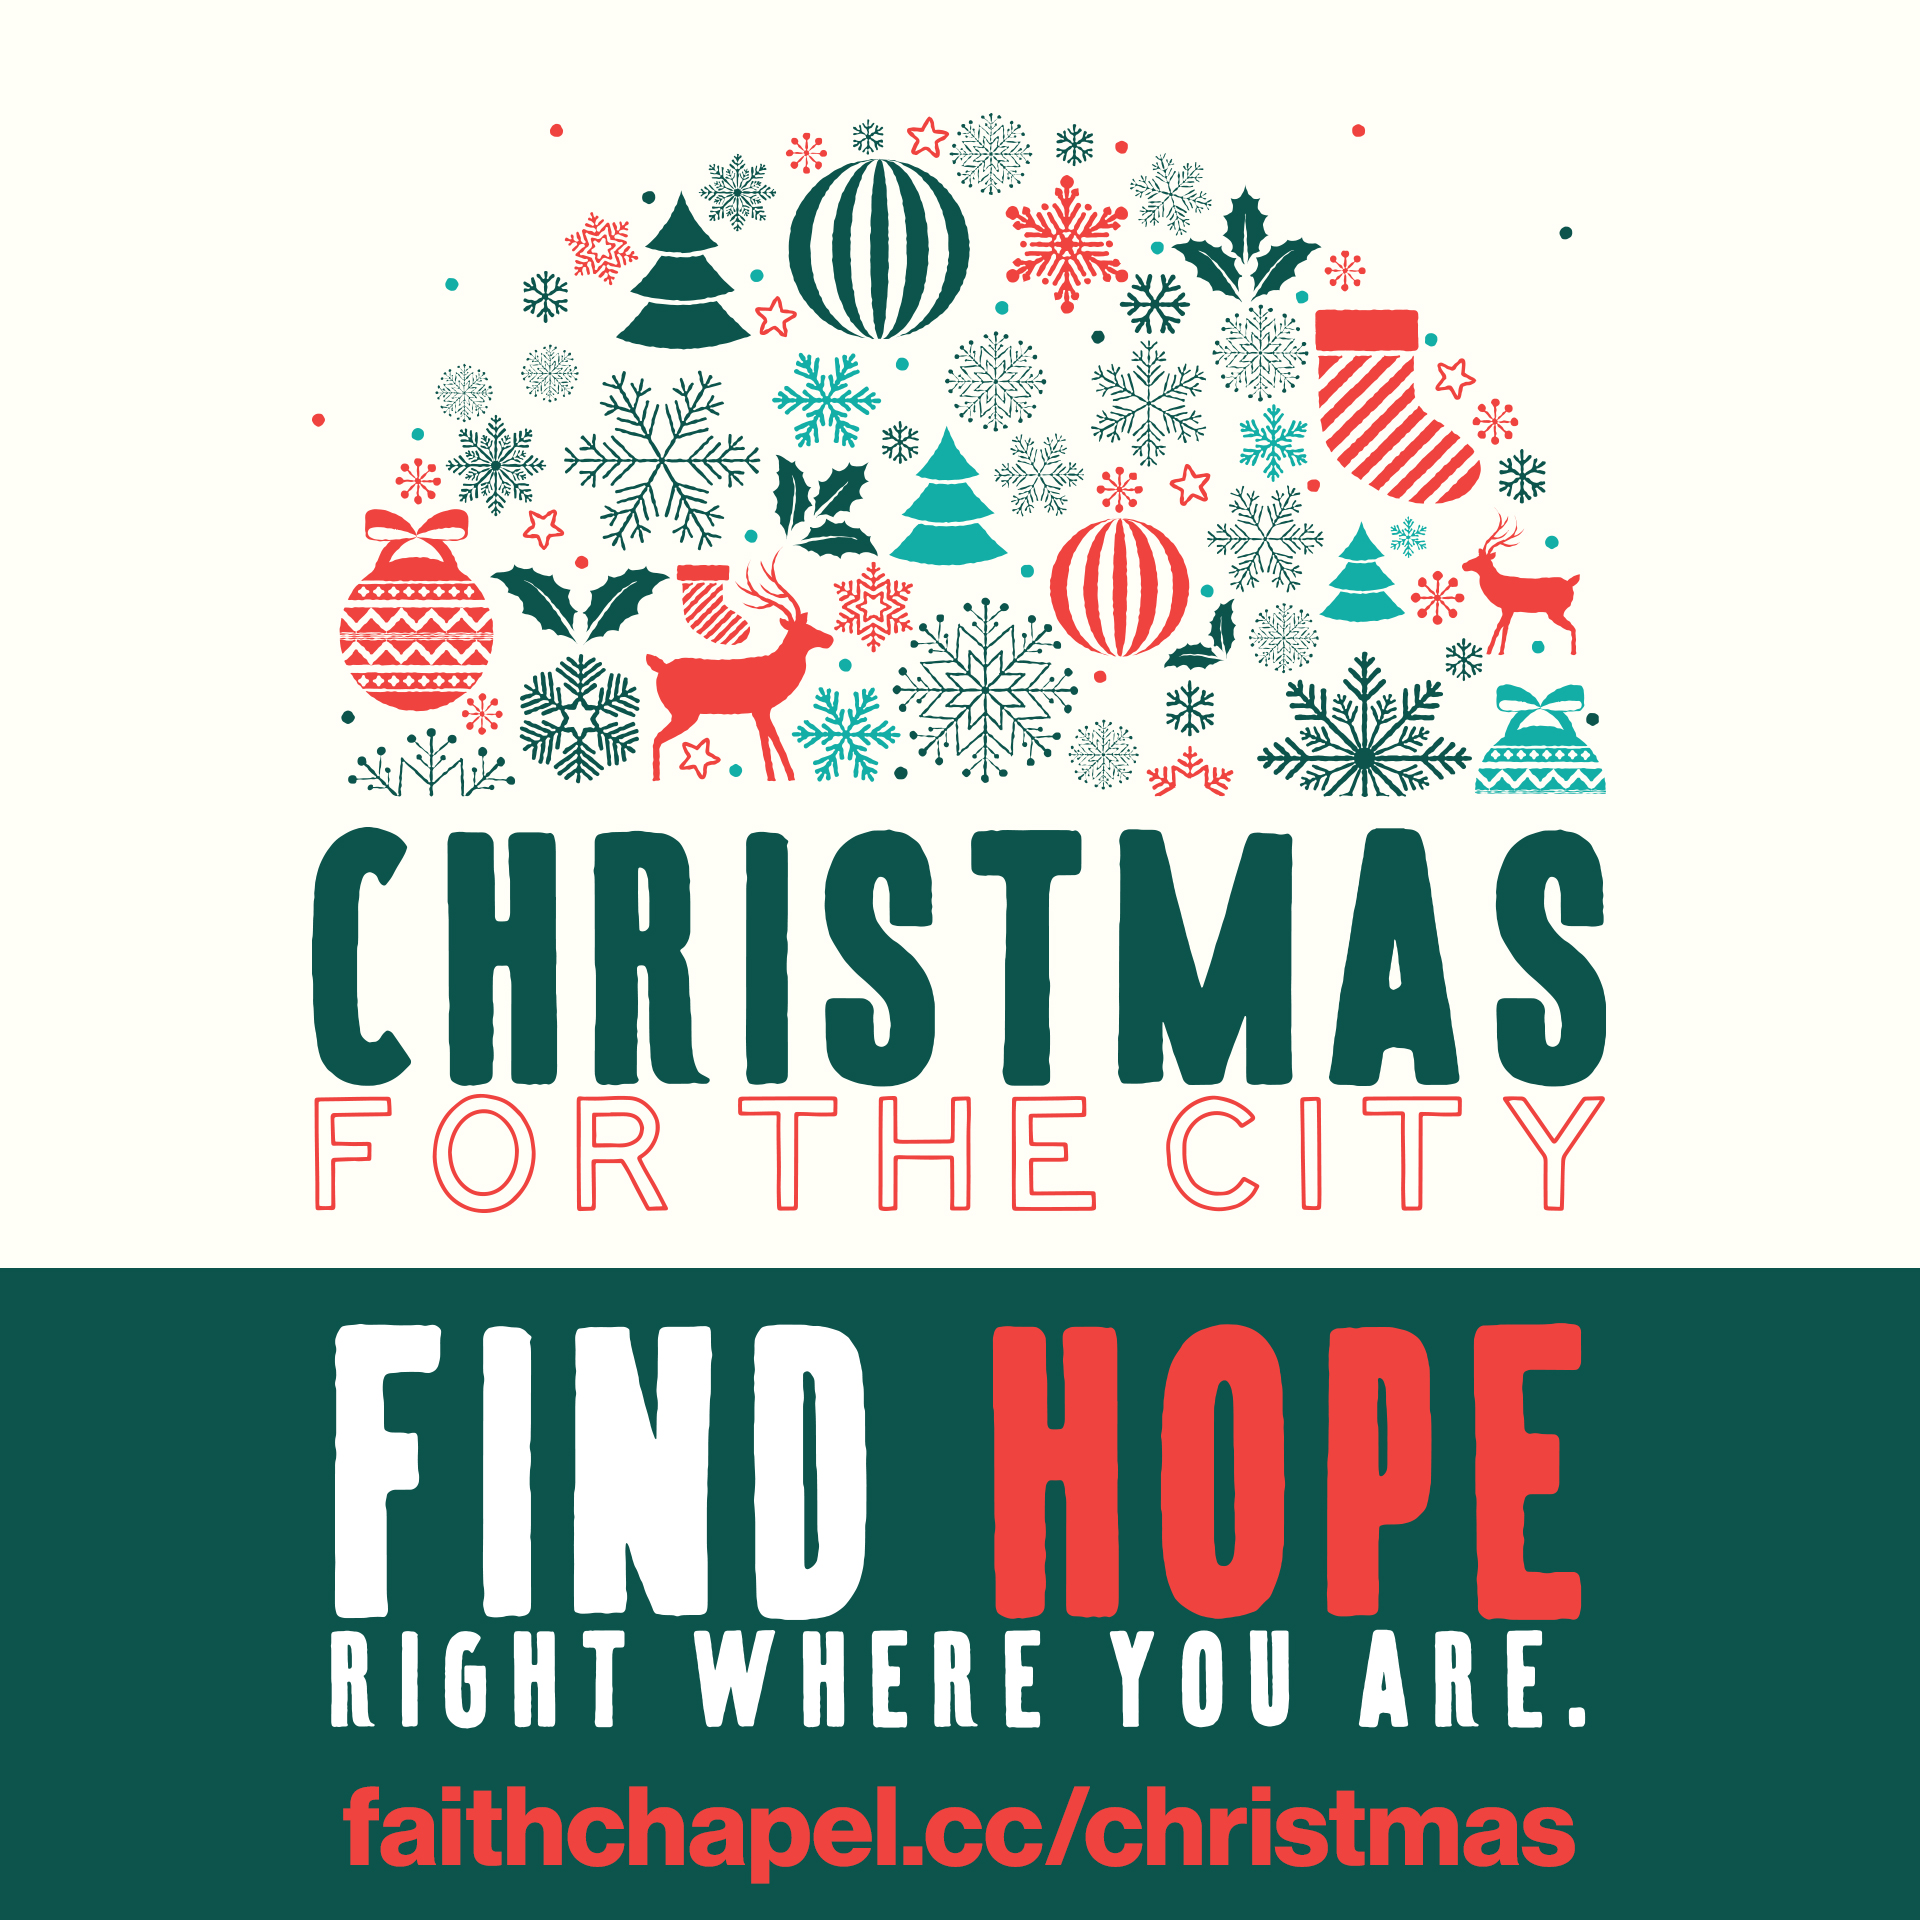 Share Faith Chapel